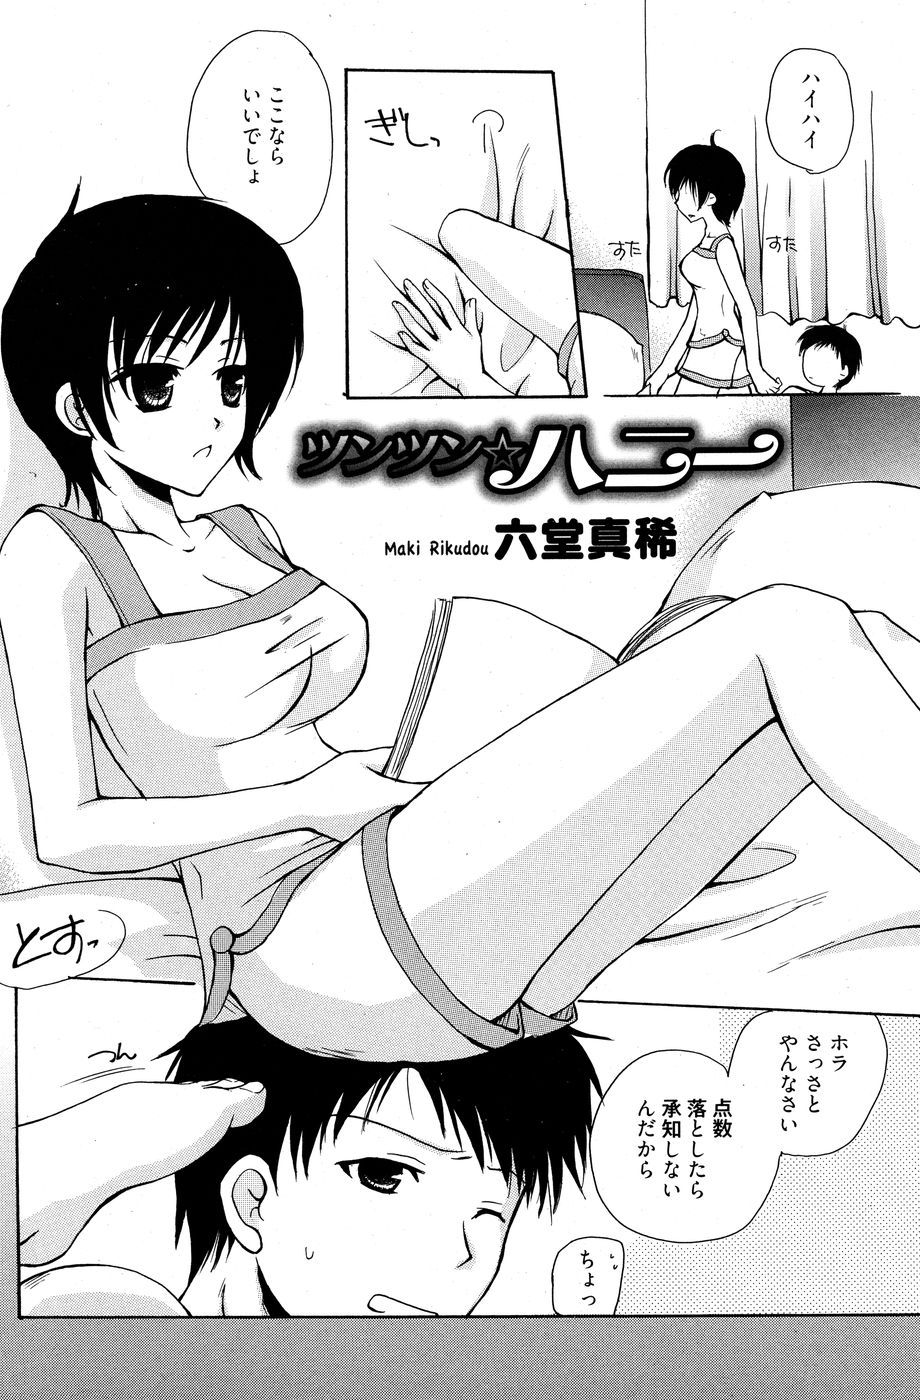 Manga Bangaichi [2010-07] 漫画ばんがいち 2010年07月号